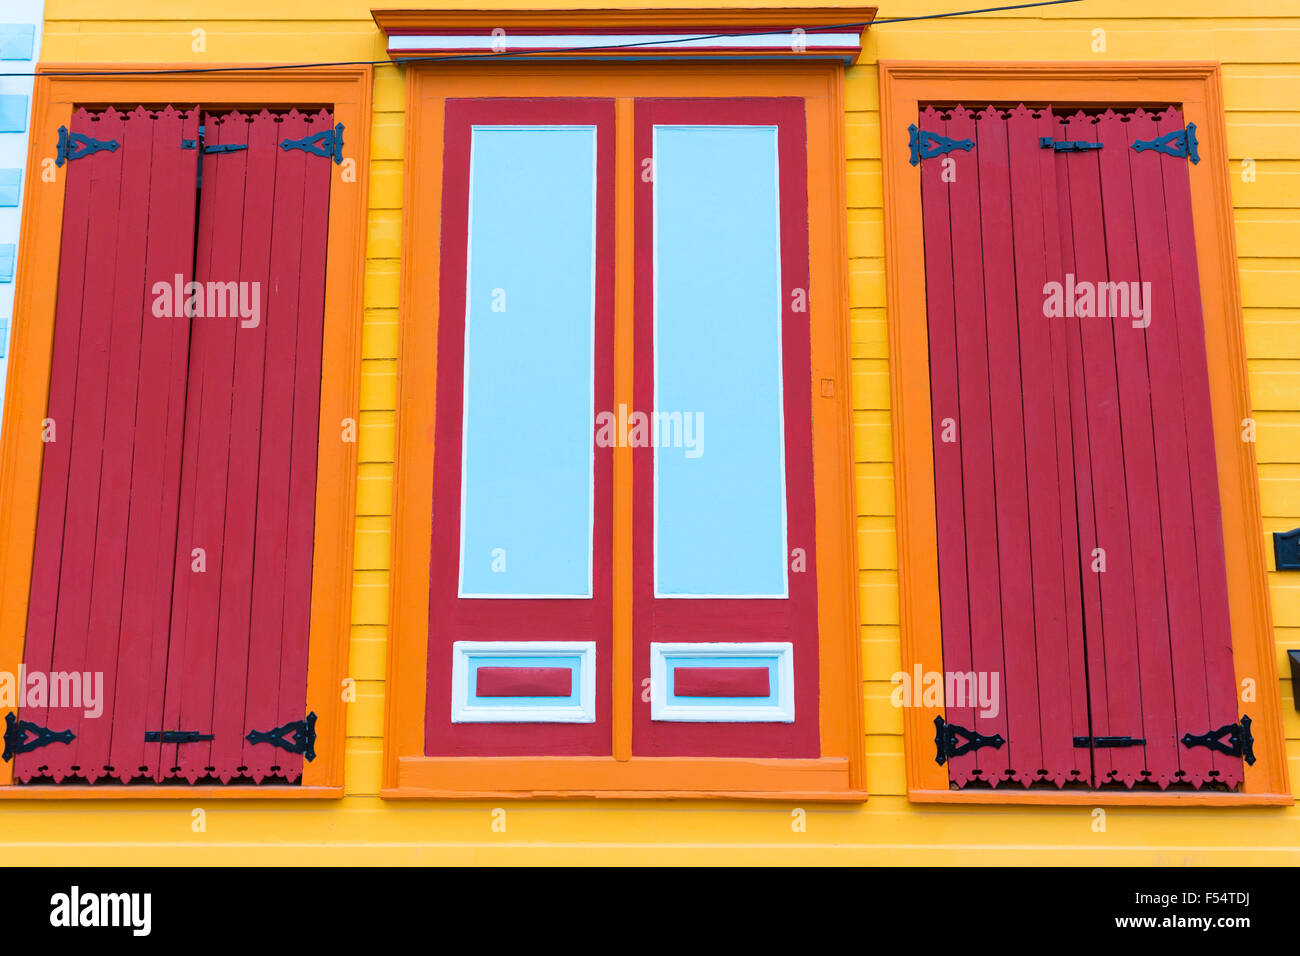 Tradizionale colore brillante clapboard cottage creolo home in Faubourg Marigny distretto storico di New Orleans, STATI UNITI D'AMERICA Foto Stock